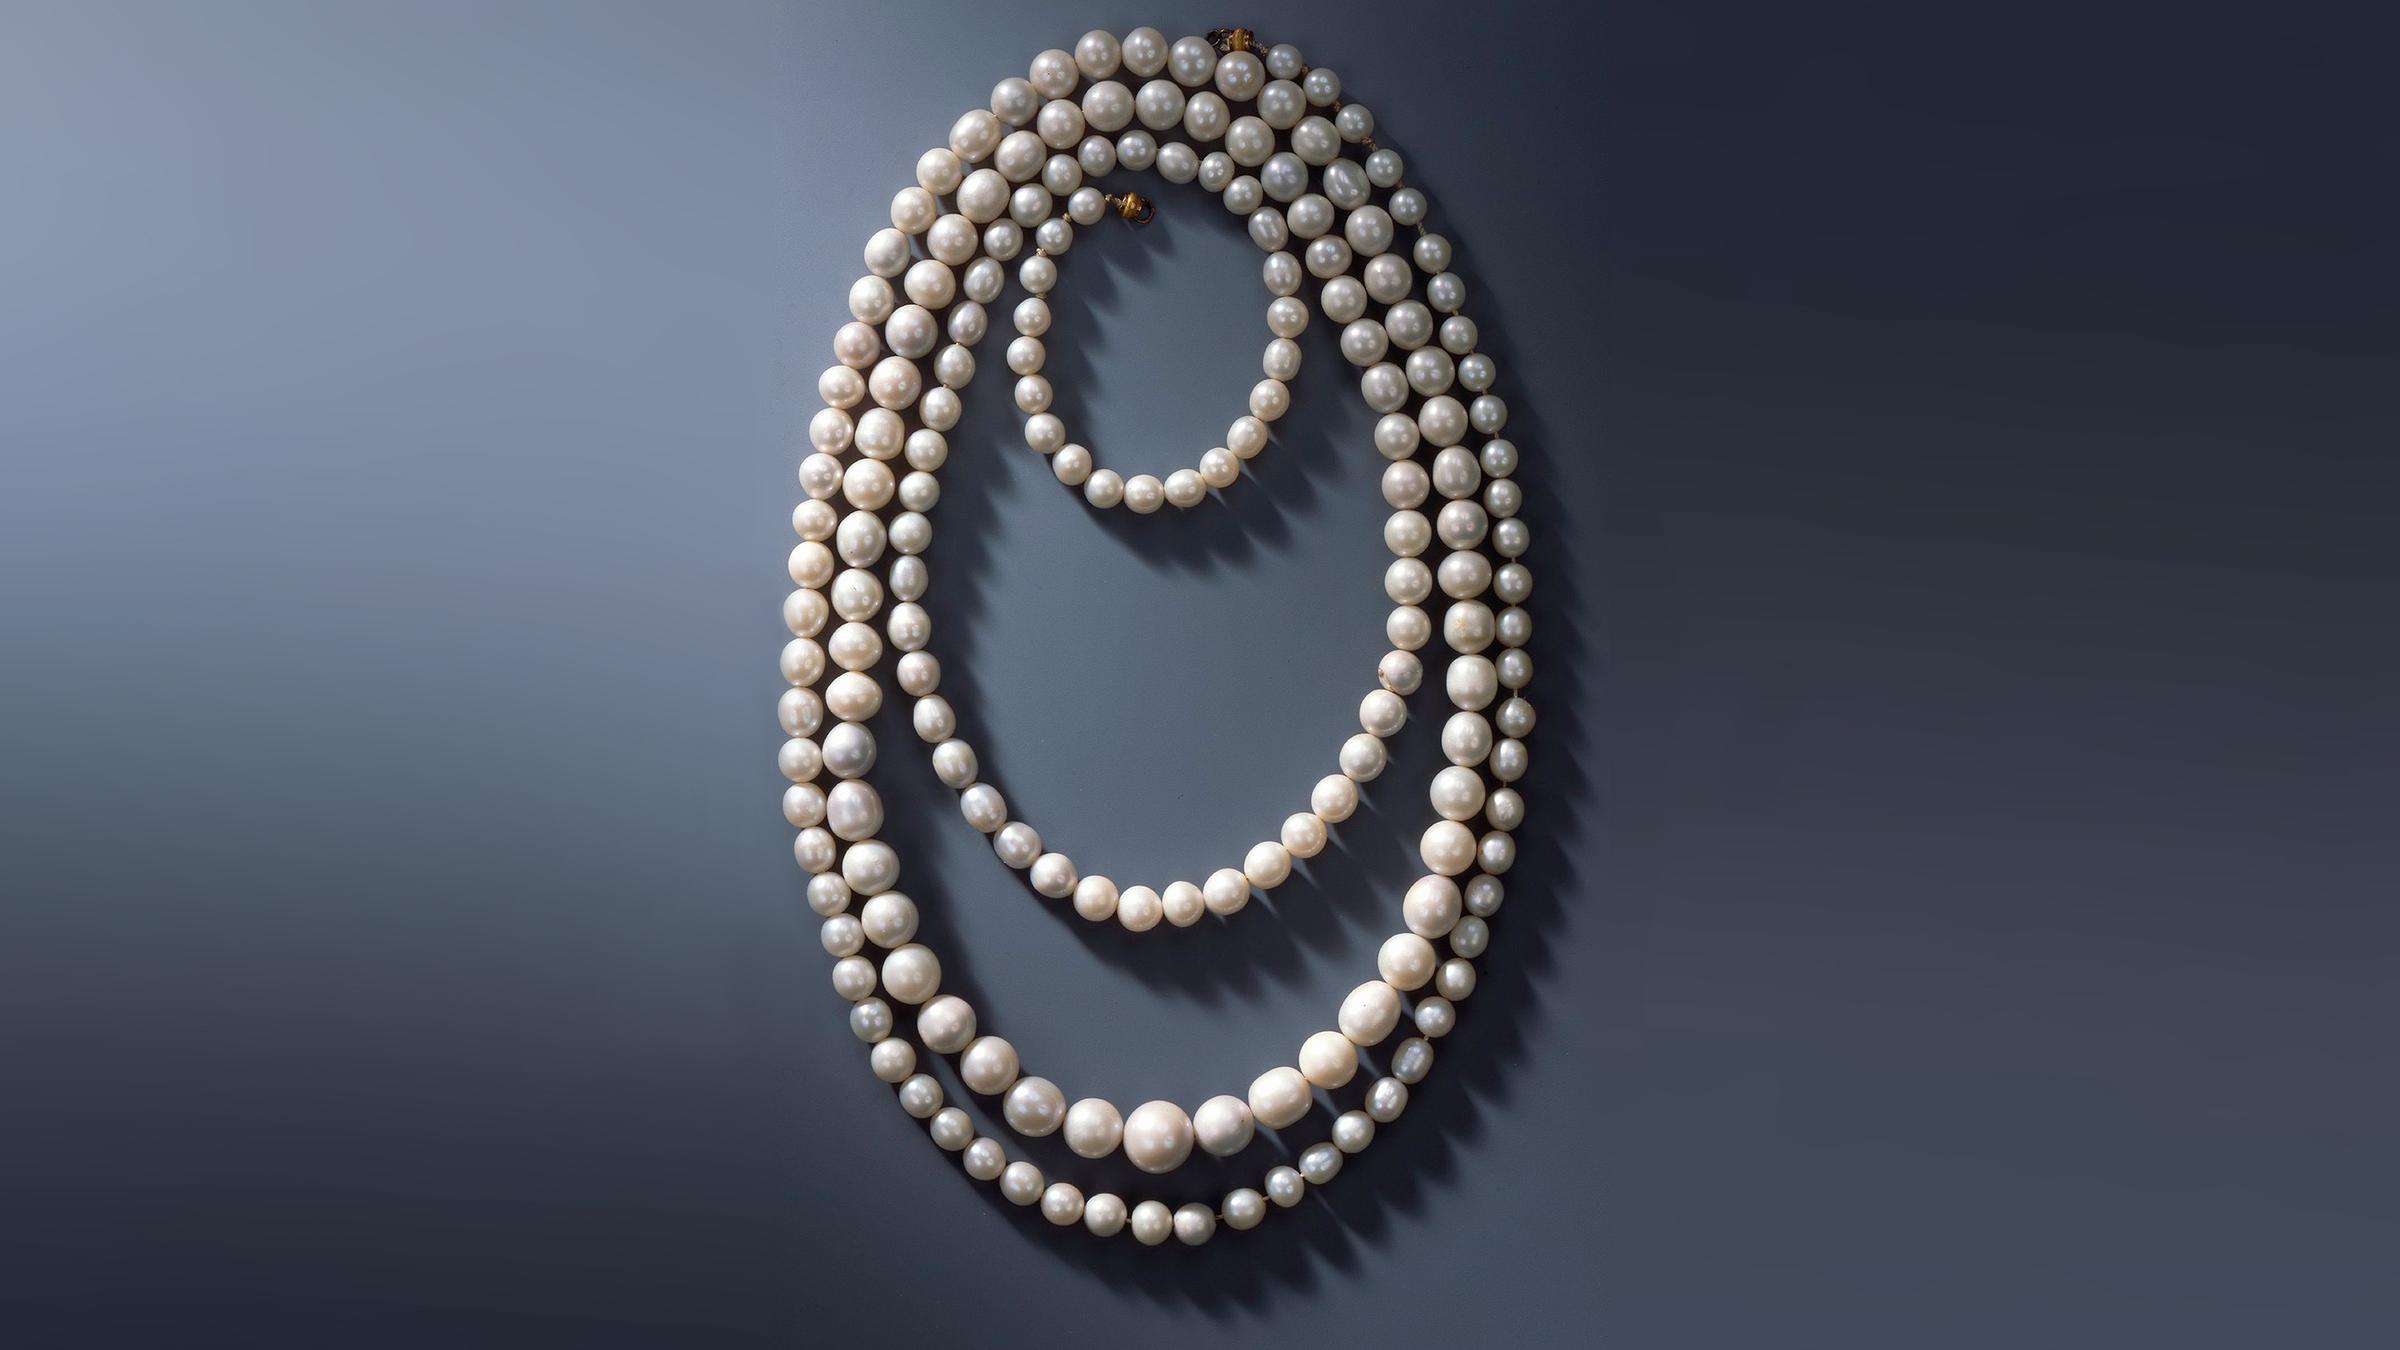 Kette aus 177 sächsischen Perlen, die aus vogtländischen Gewässern gewonnen wurden.